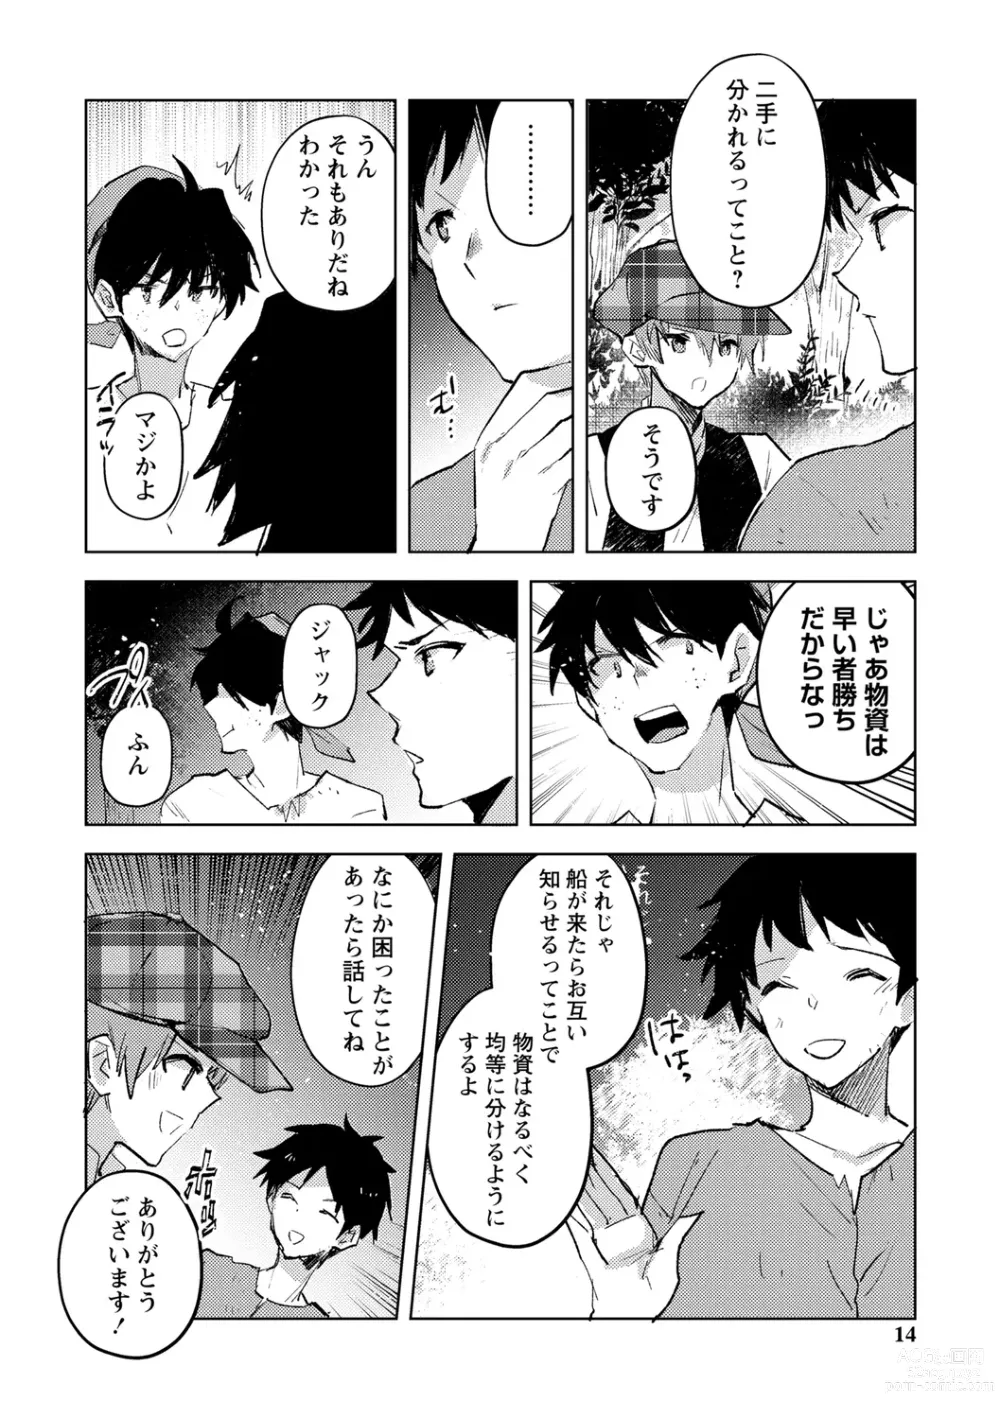 Page 14 of manga Bad endroll